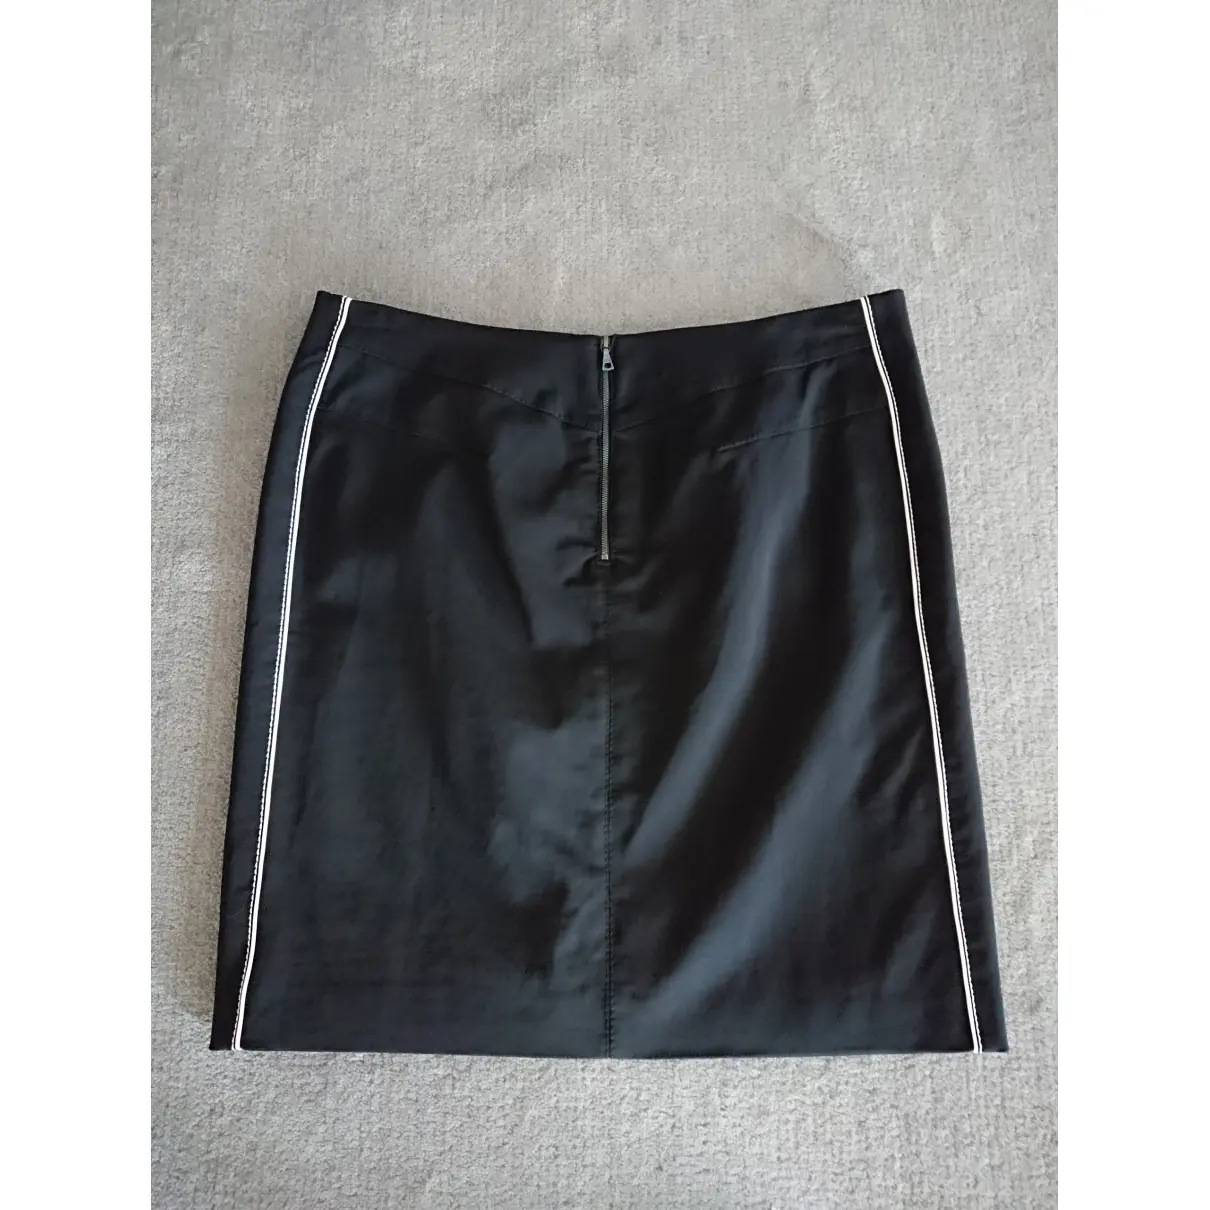 Buy Marc Cain Mini skirt online